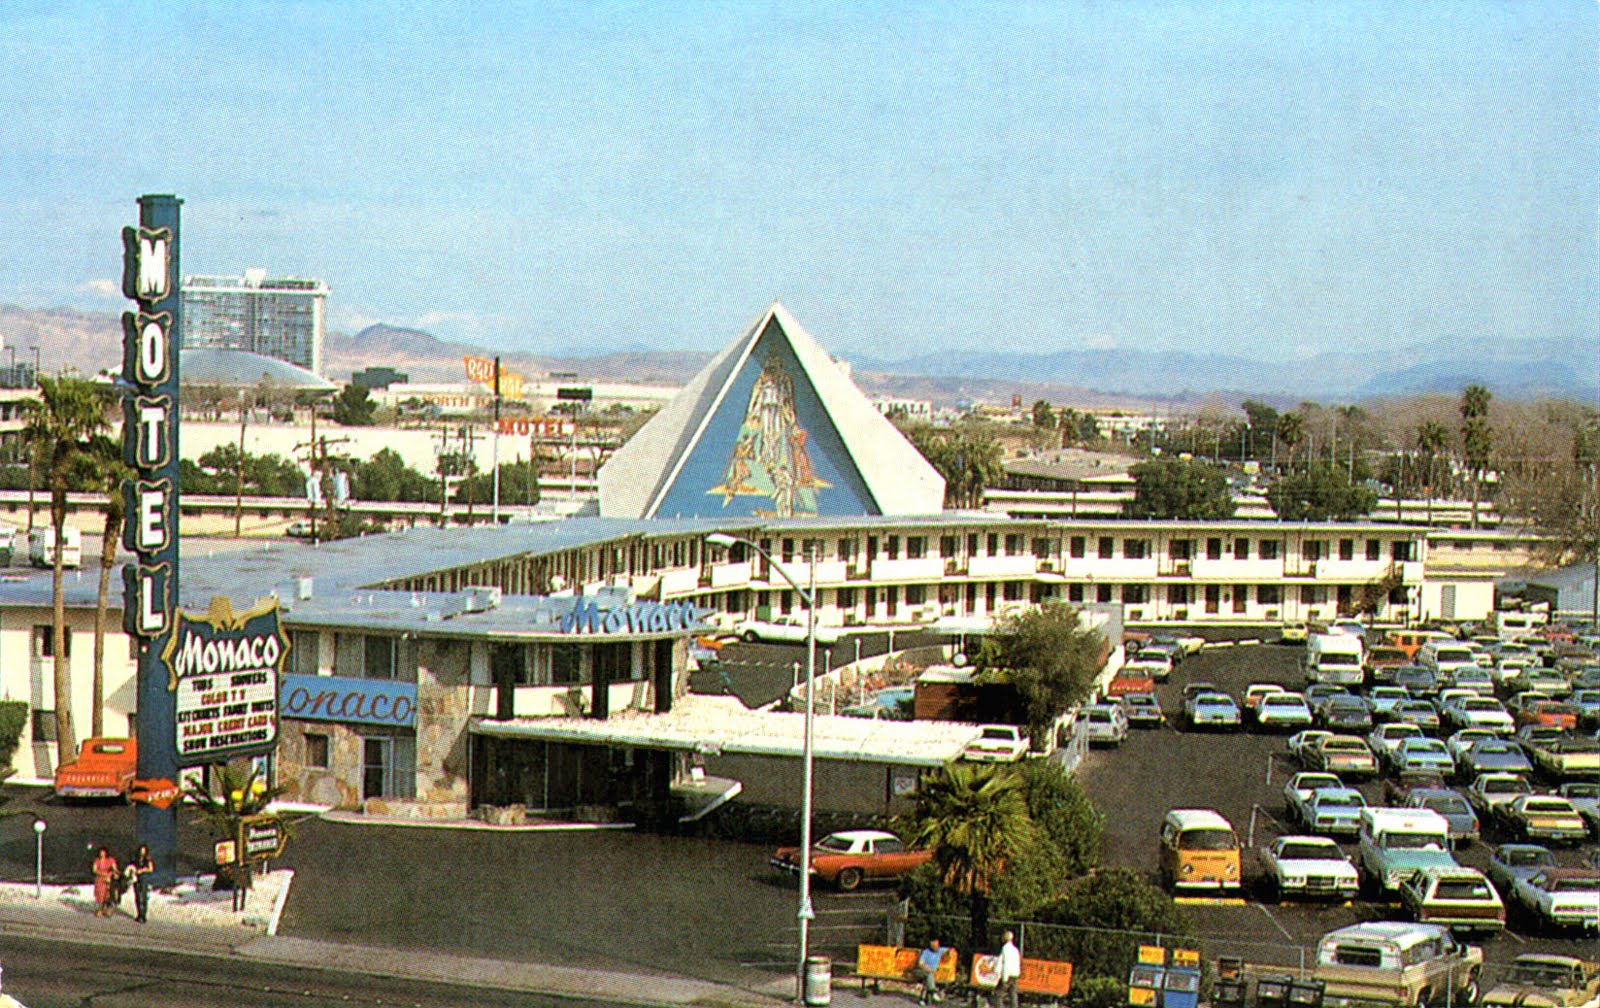 Las Vegas 1960s